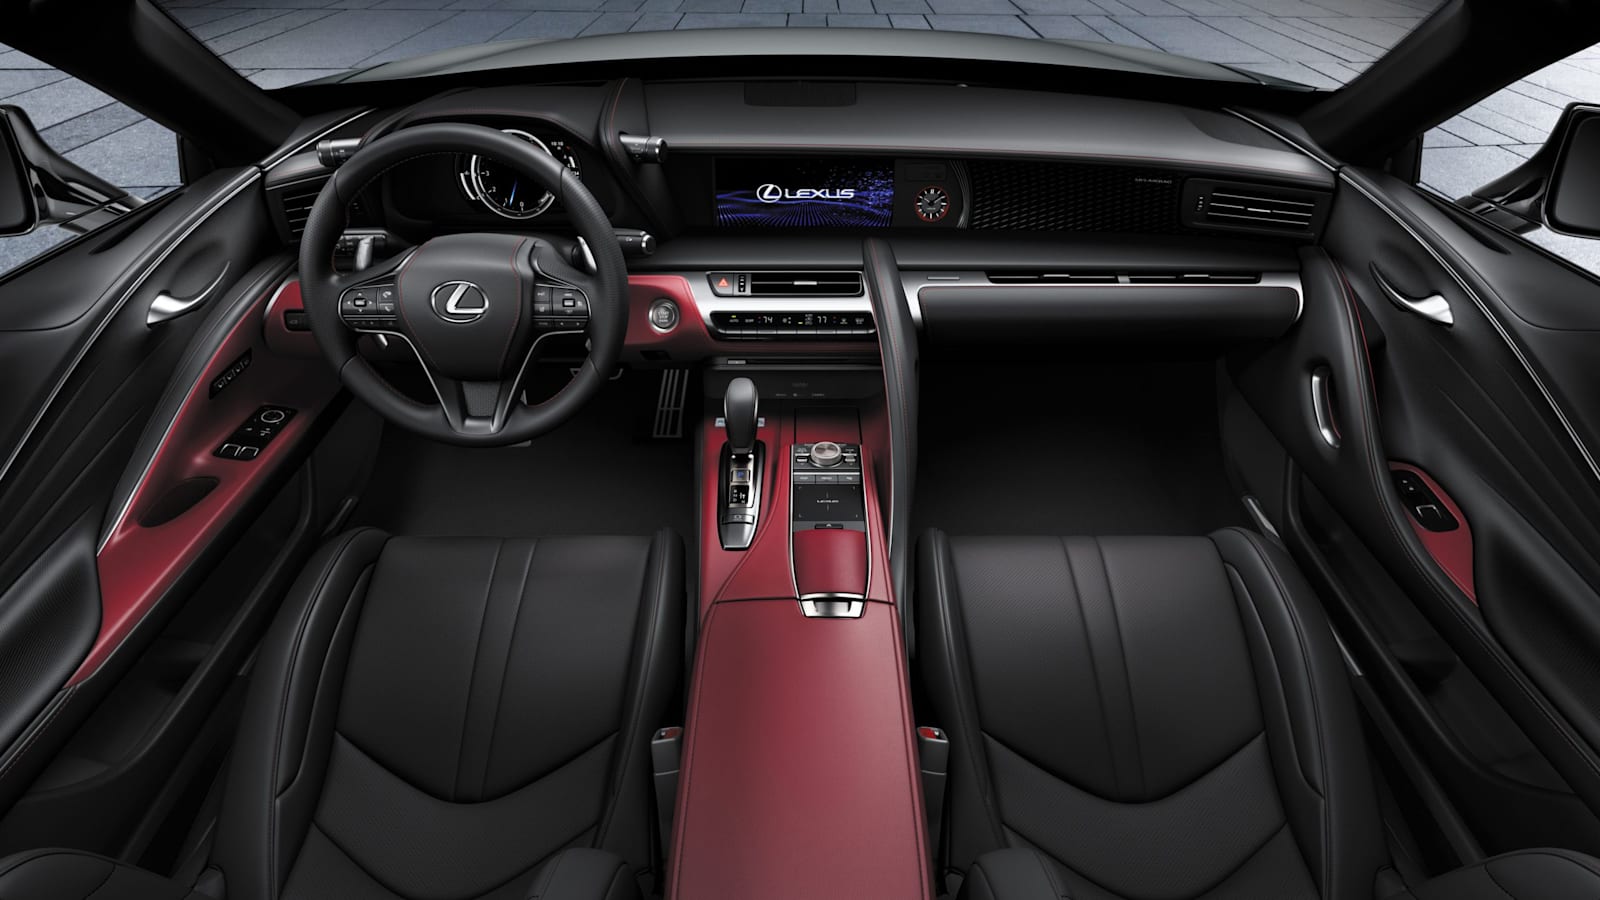 2022 Lexus LC 500 Inspiration Series gets red accents, unique wheels -  Autoblog